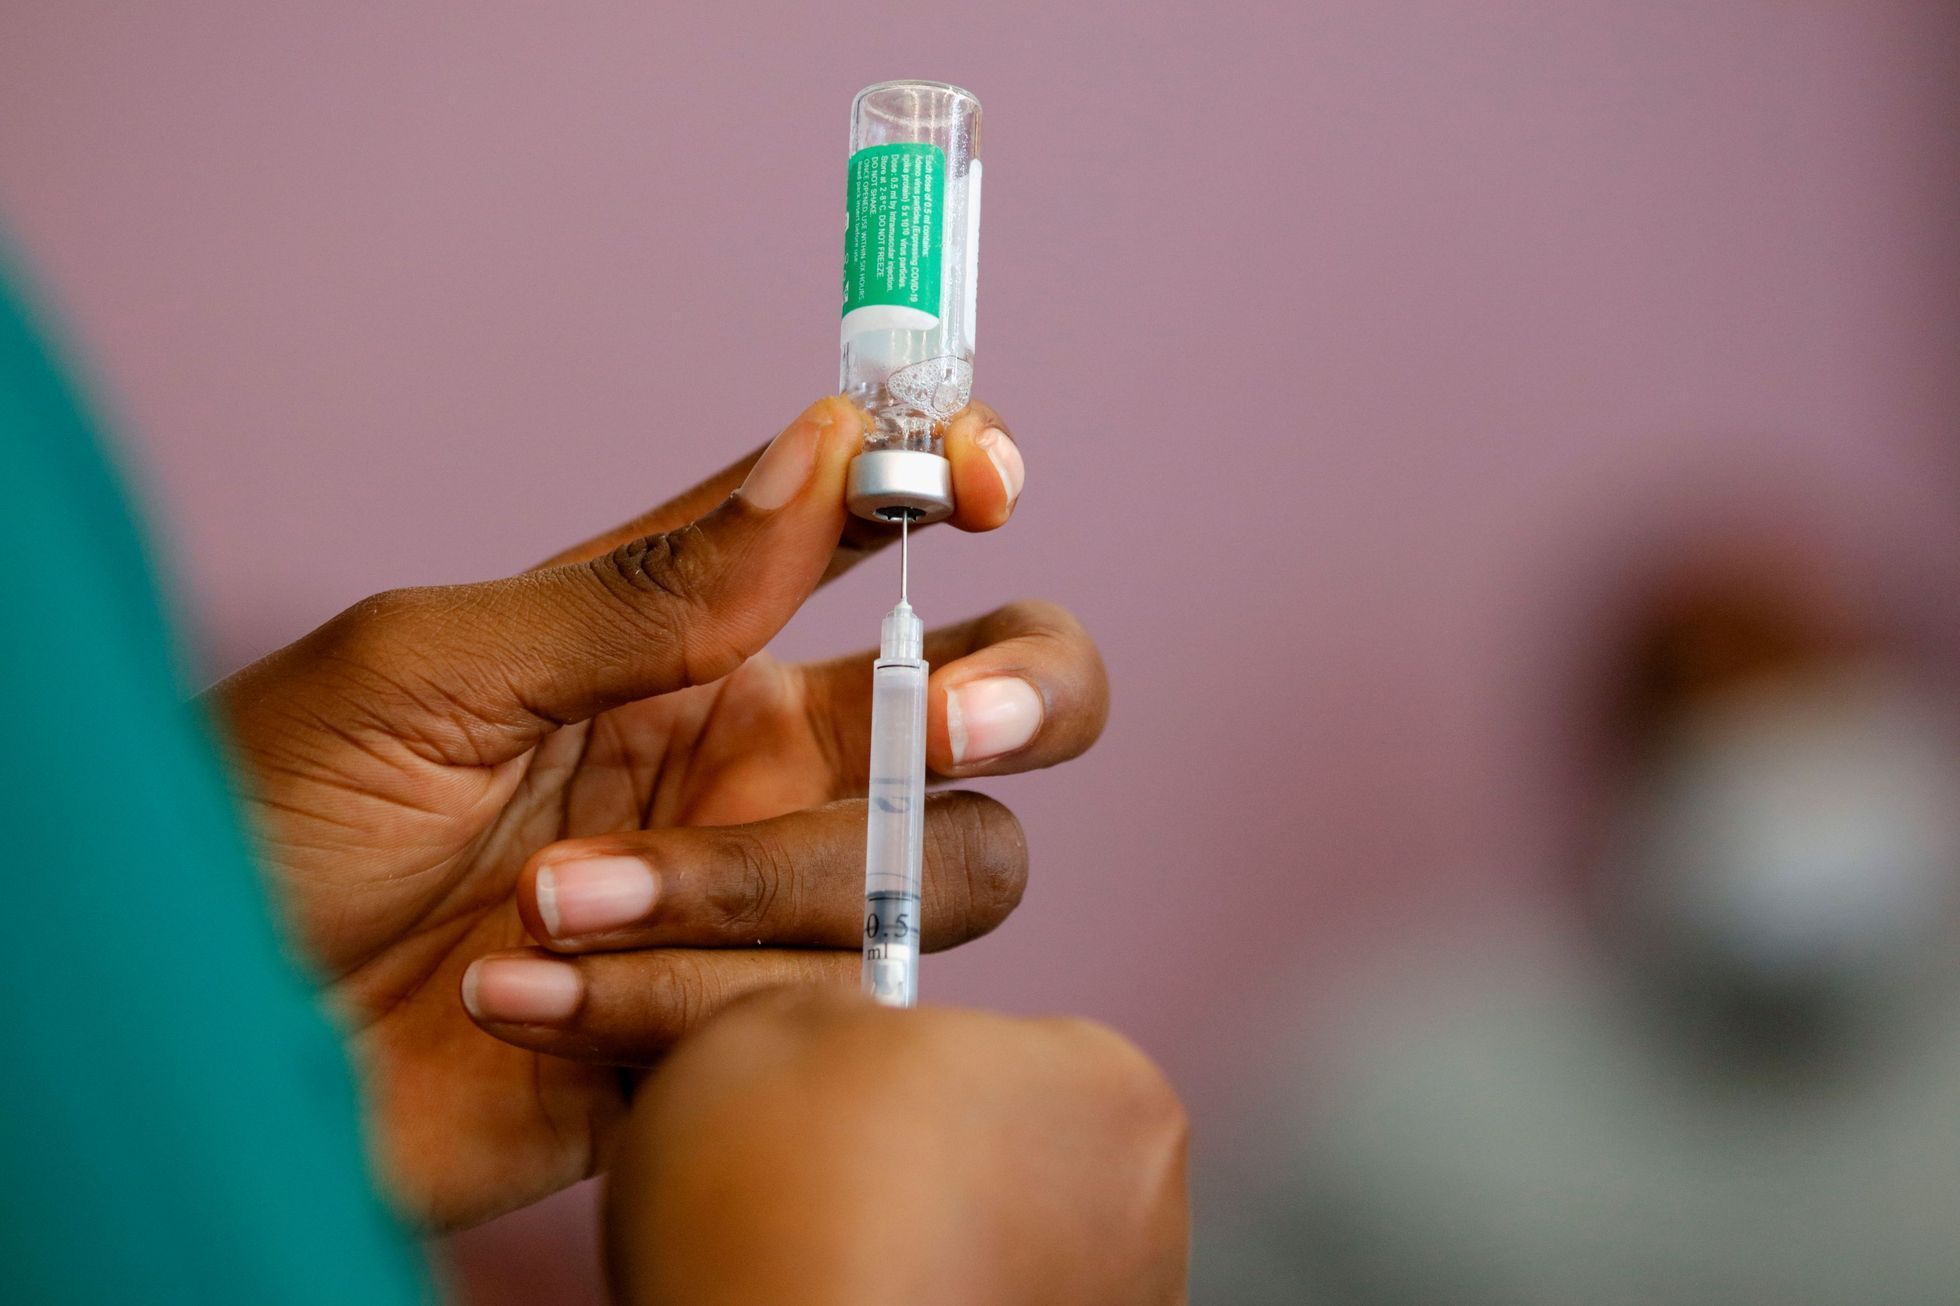 Očkování v Ghaně